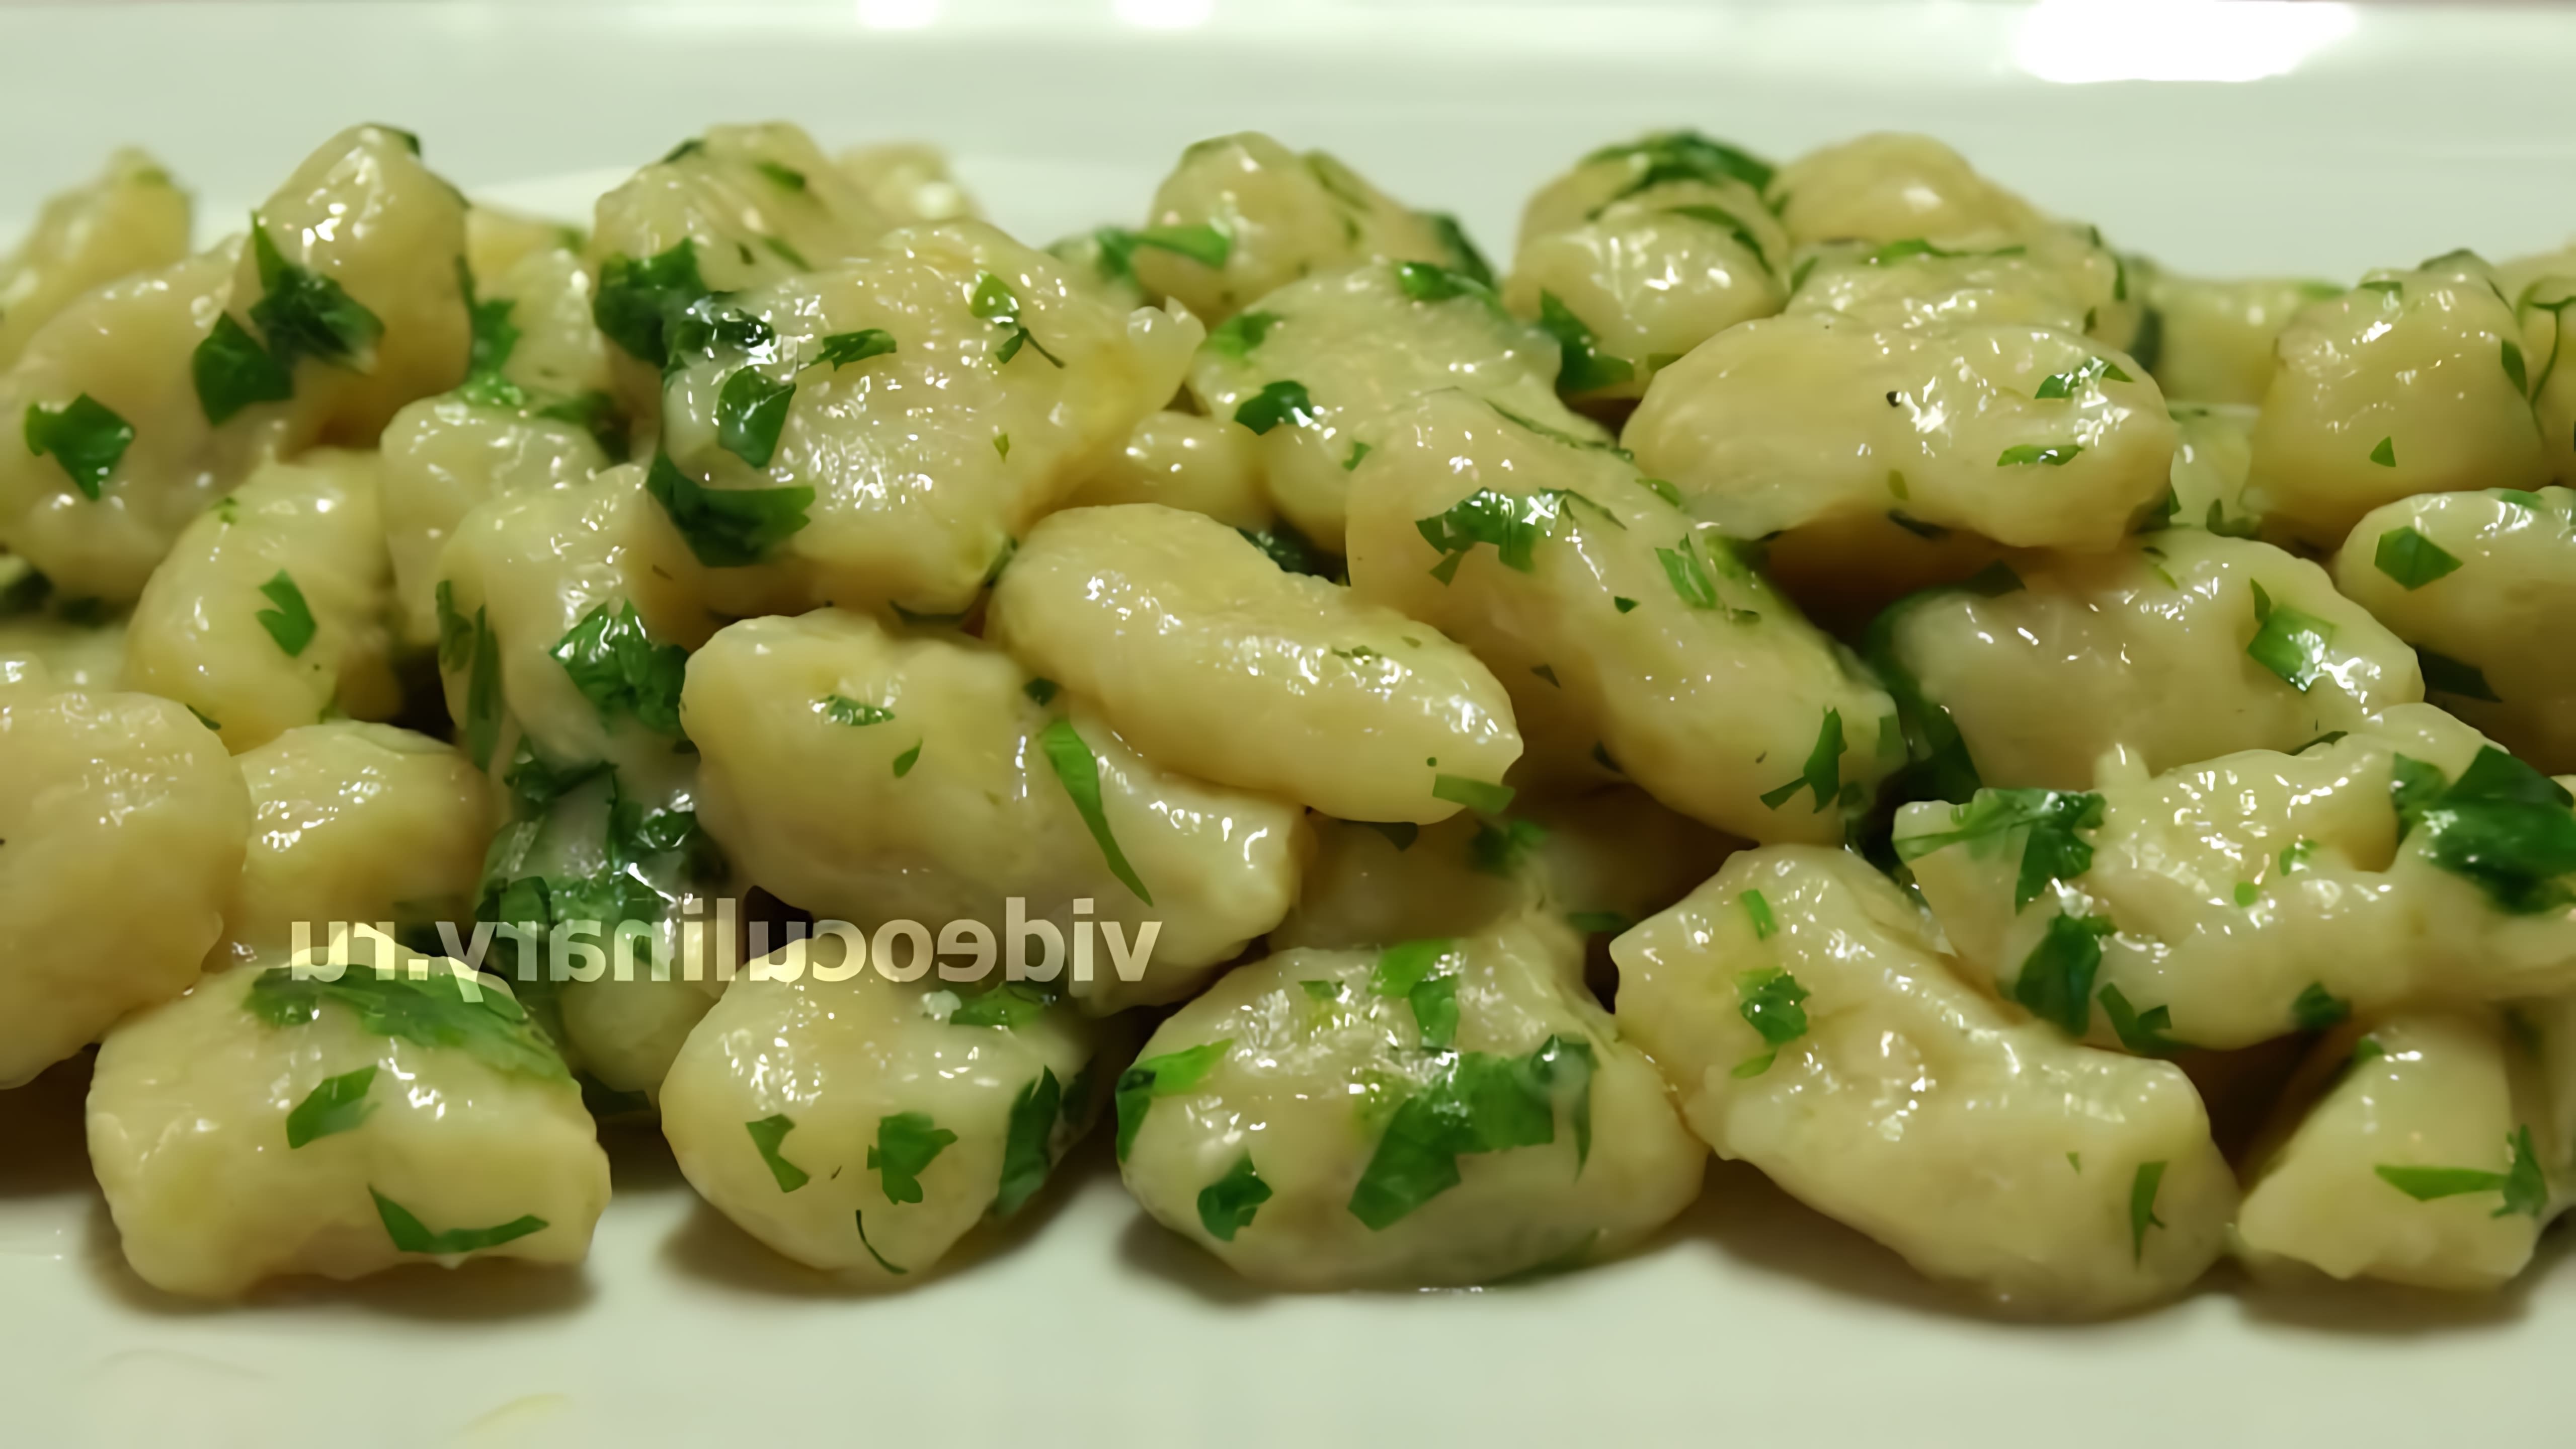 В этом видео демонстрируется рецепт картофельных ньокков, которые готовятся из запеченного или отваренного в мундире картофеля, соли и муки